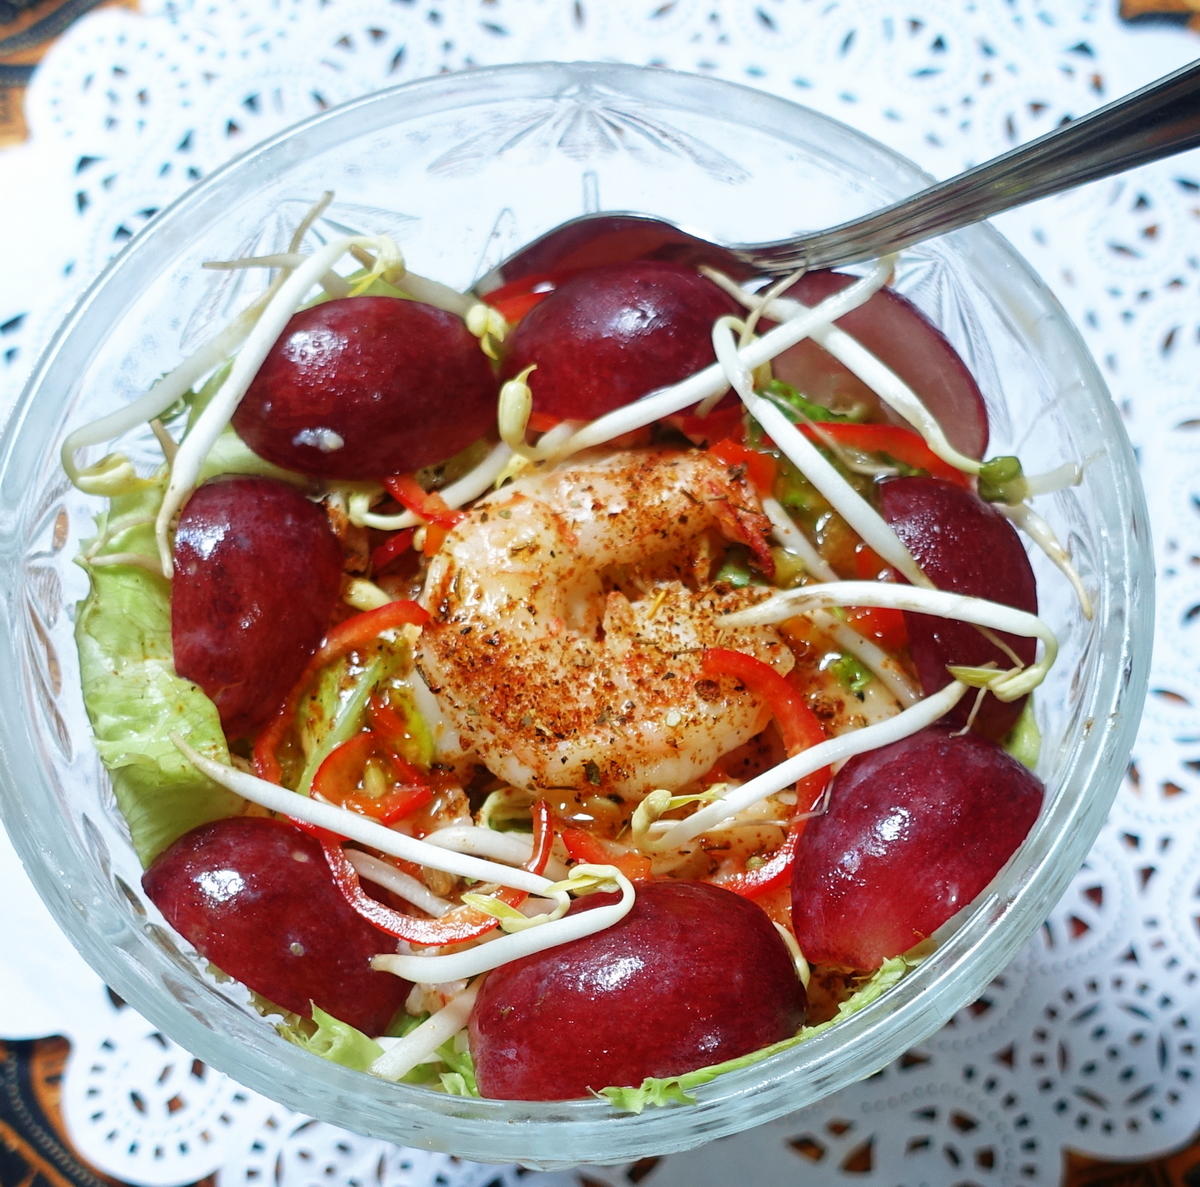 Blattsalat mit Shrimps und Früchten - Rezept - Bild Nr. 2